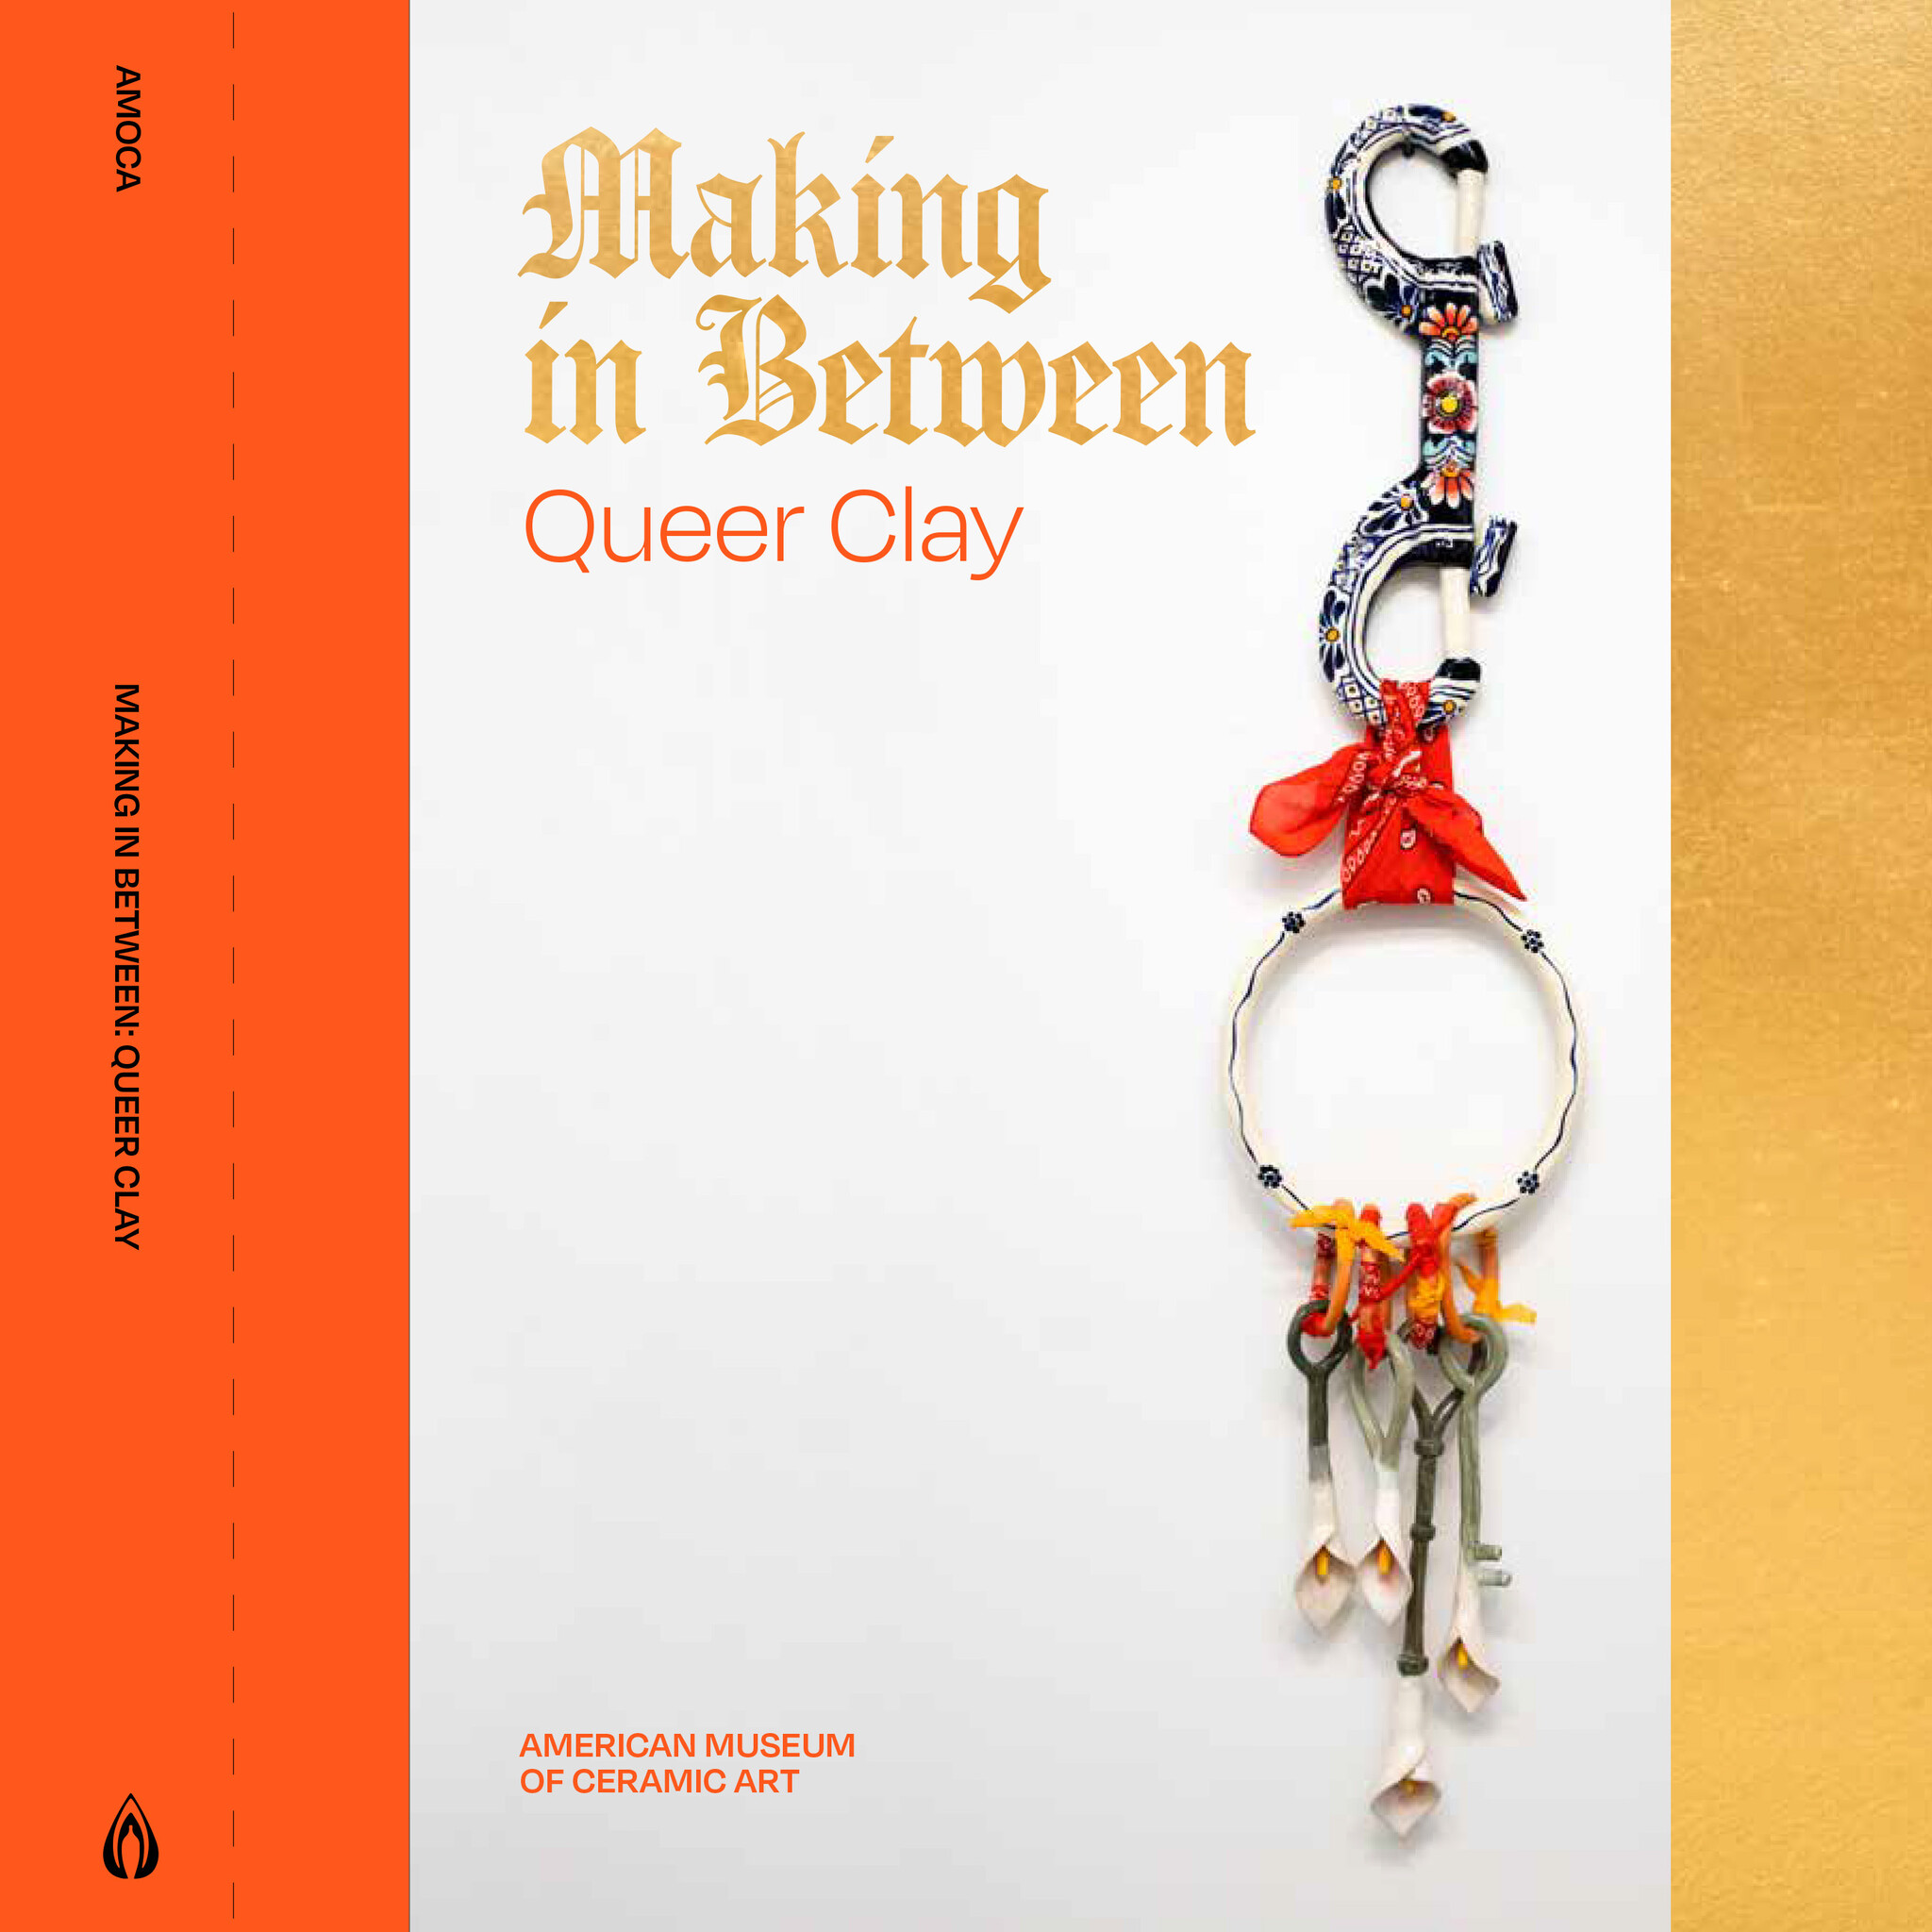 Making in Between: Queer Clay Catalog